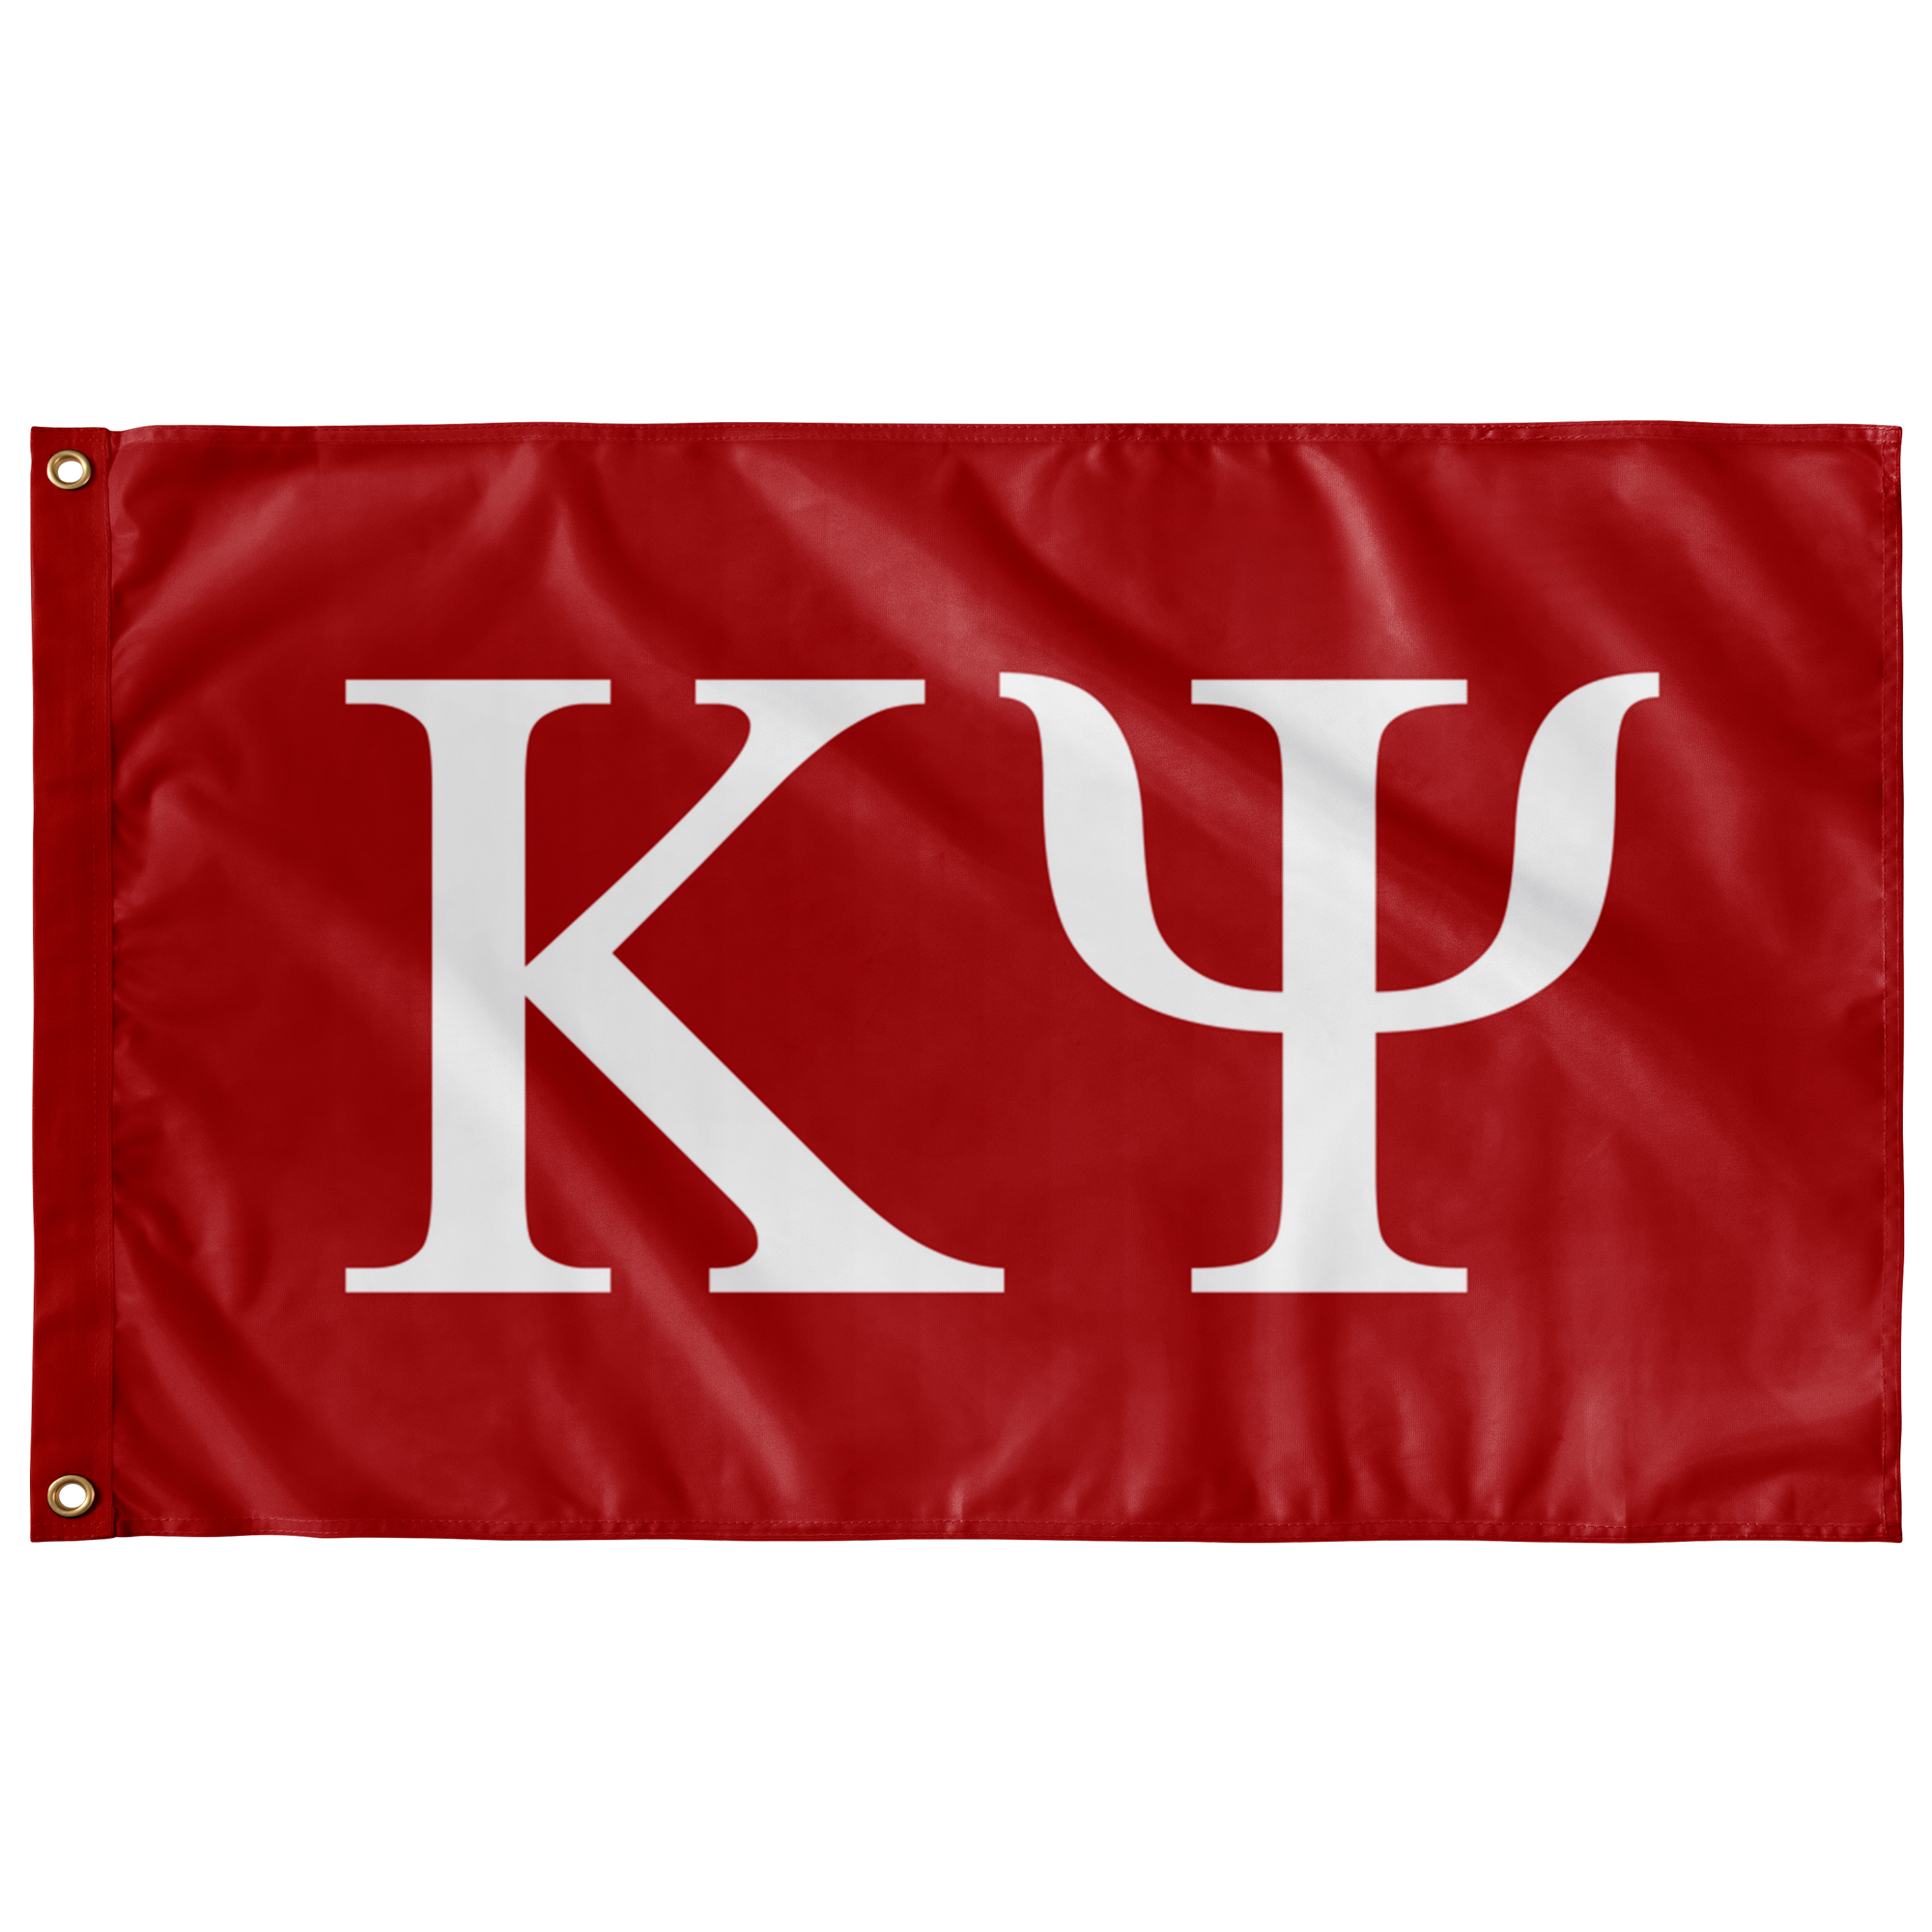 Kappa Psi Flags - Red & White Custom Greek Banner - DG2 – DesignerGreek2